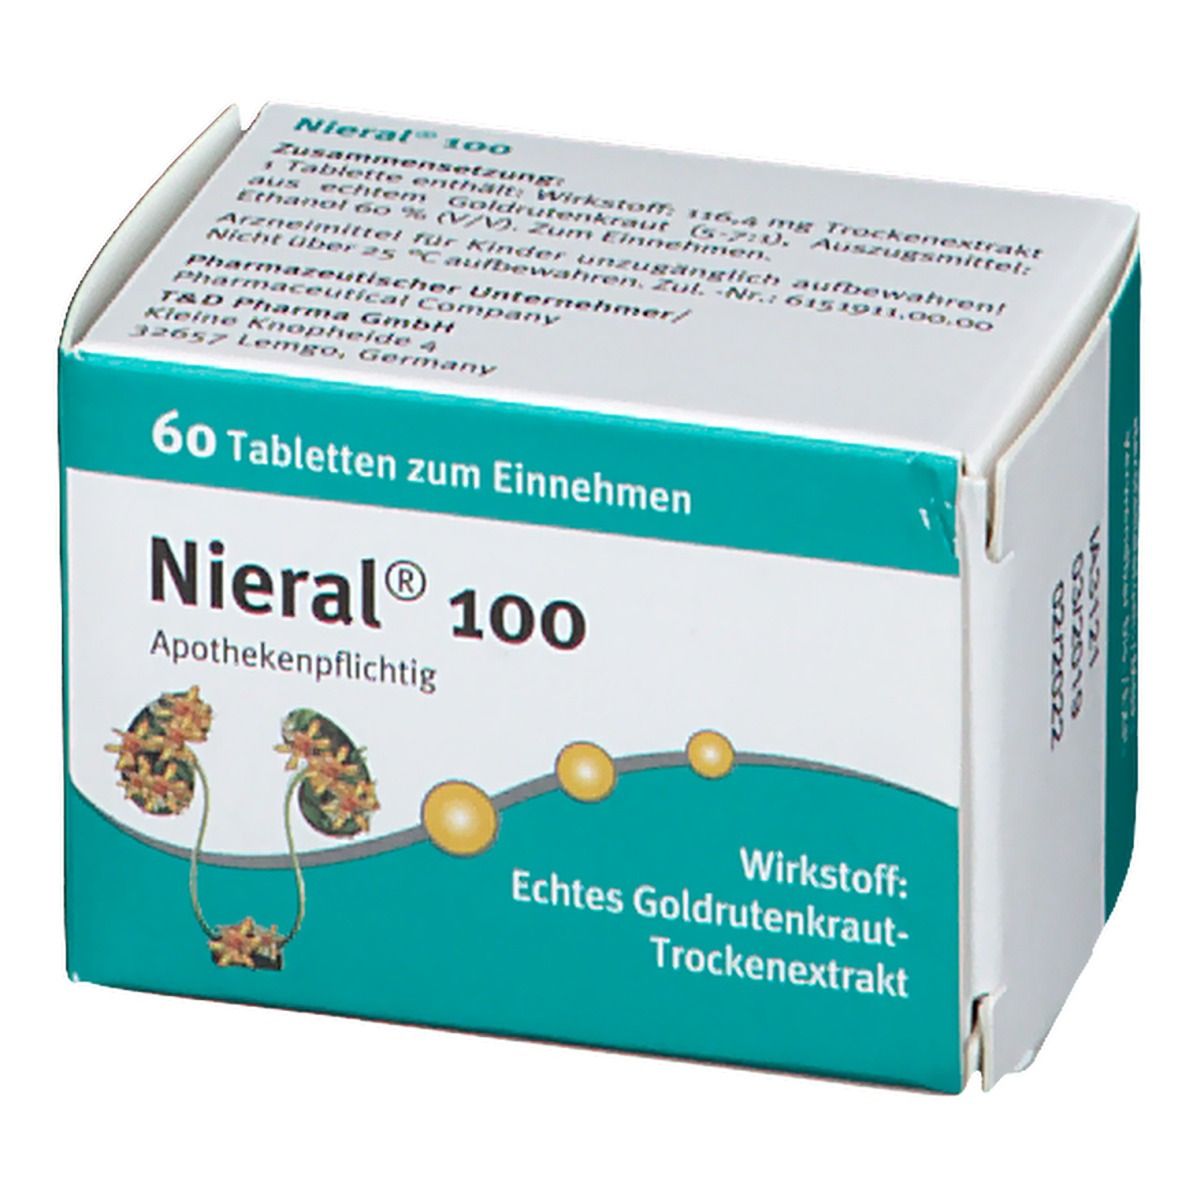 Nieral® 100